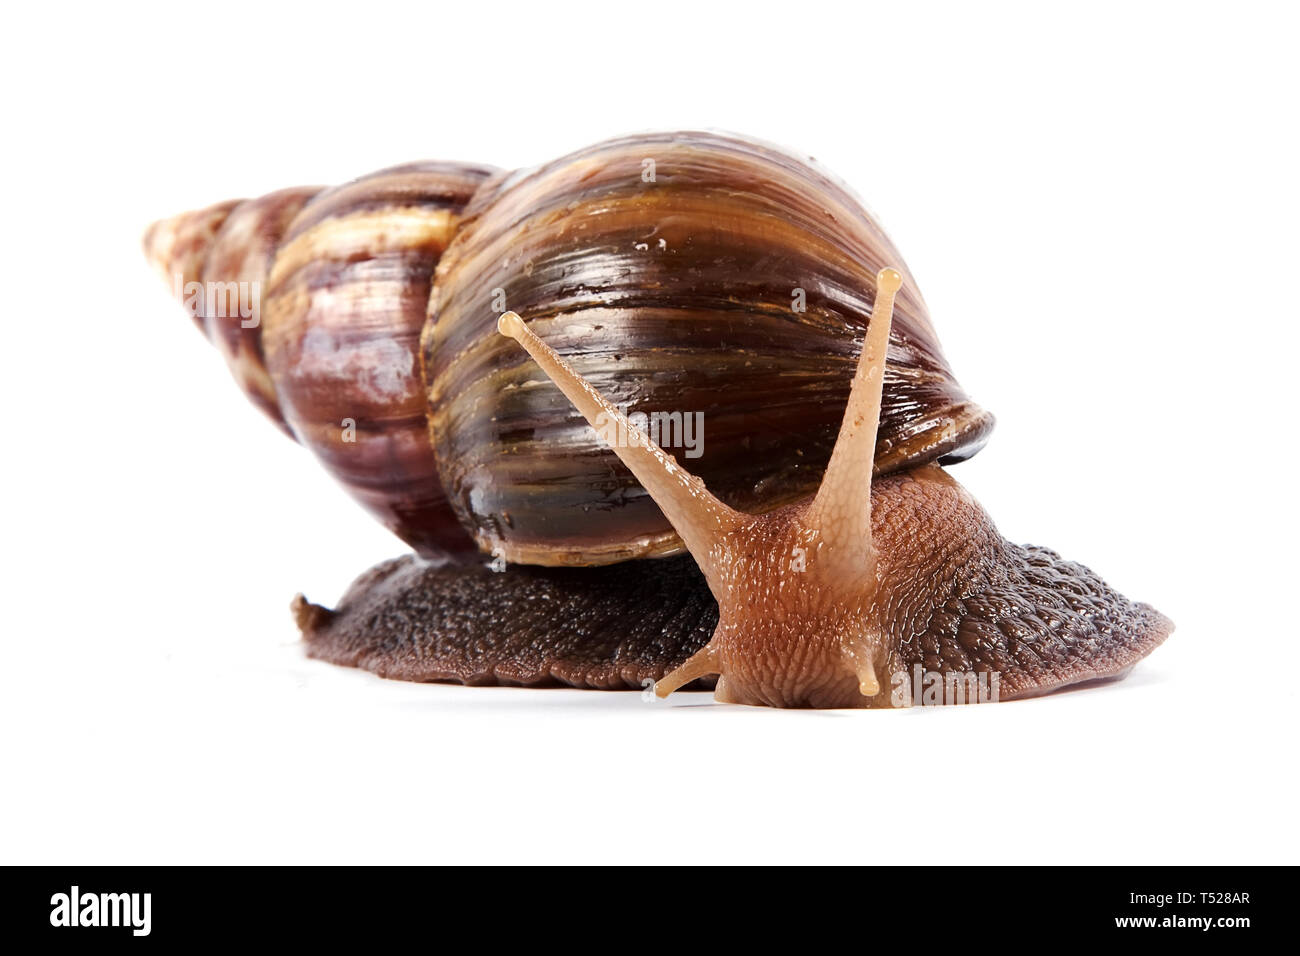 Akhatin's snail on a white background Stock Photo